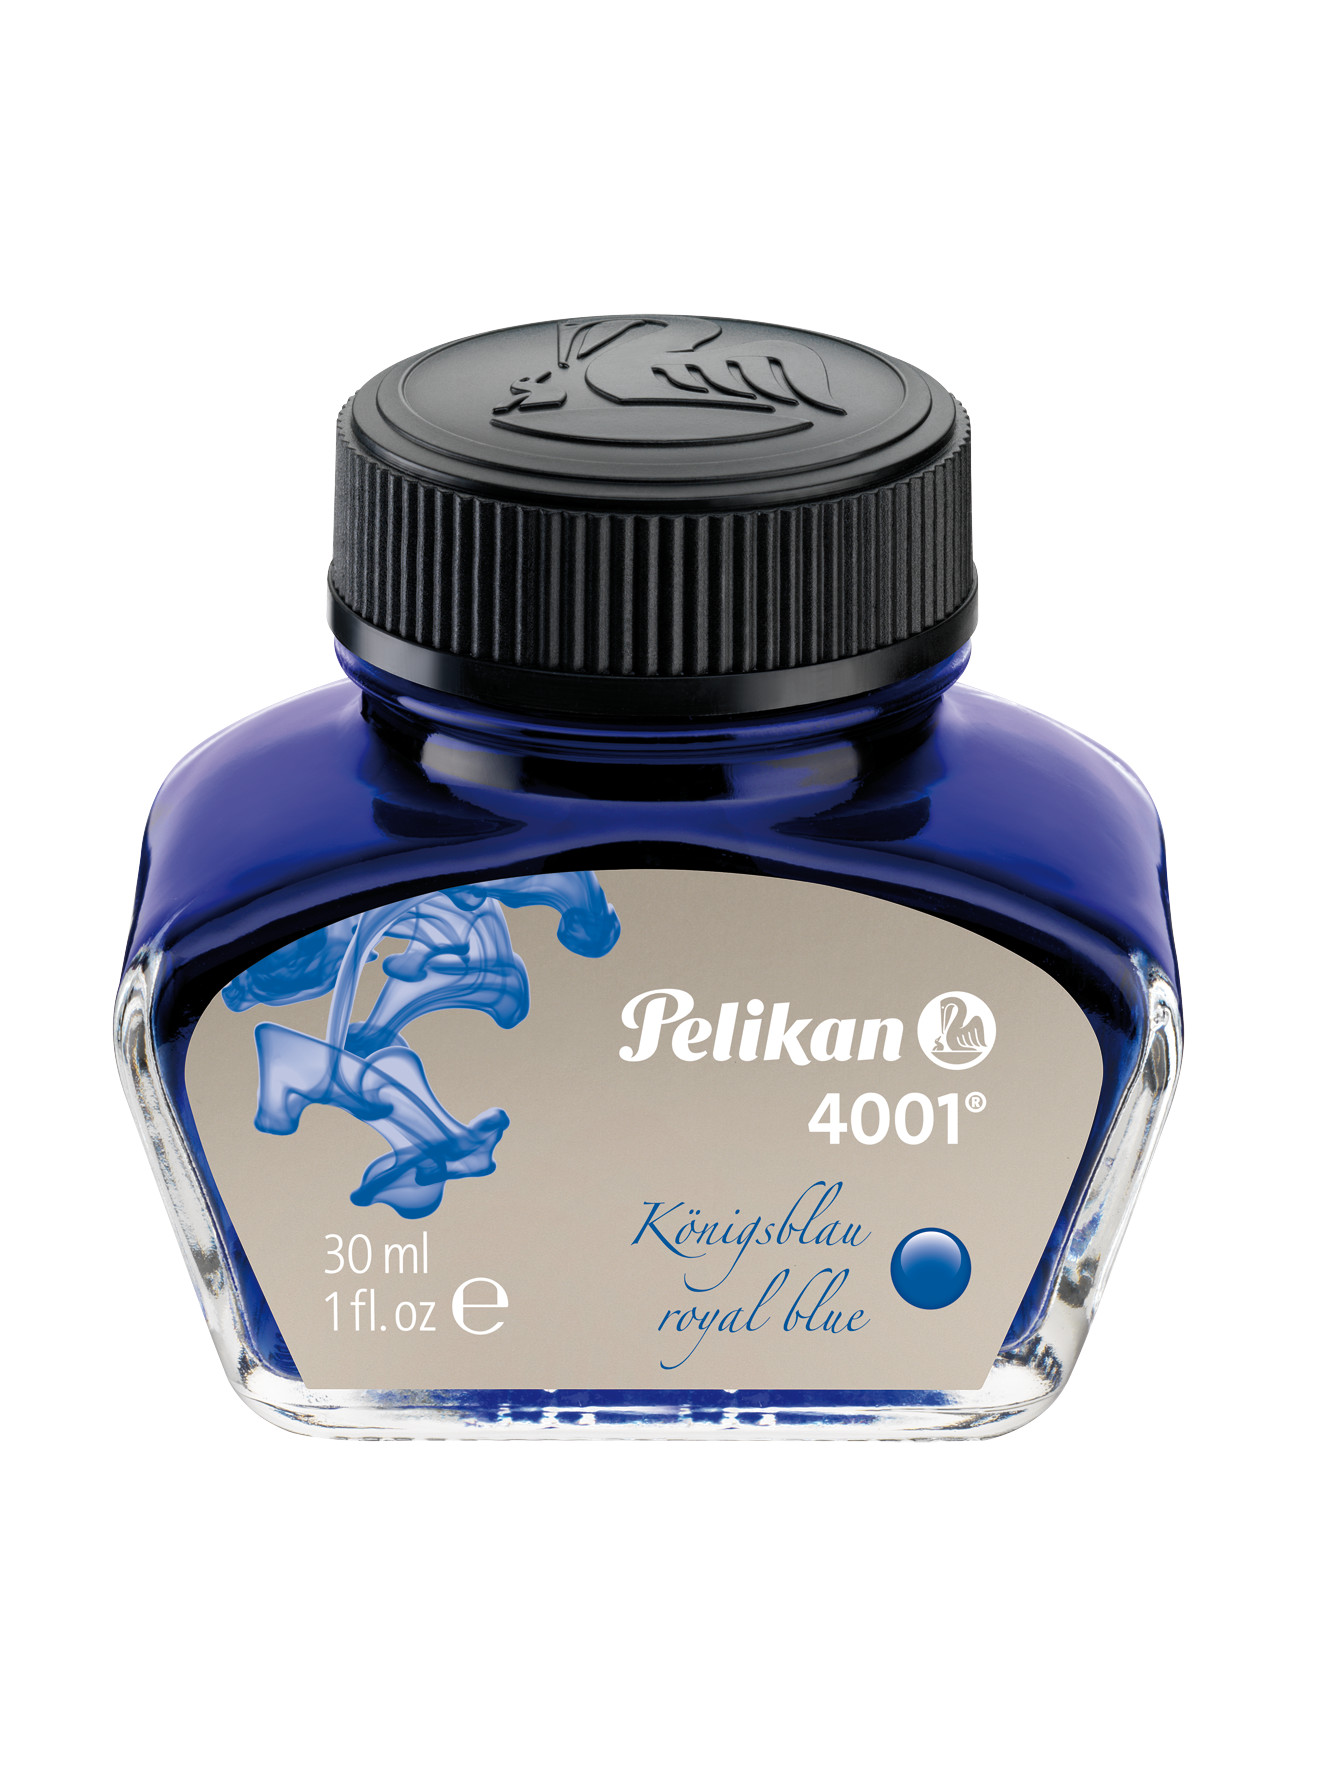 Pelikan - Tintenglas 4001 - 30ml - Königsblau